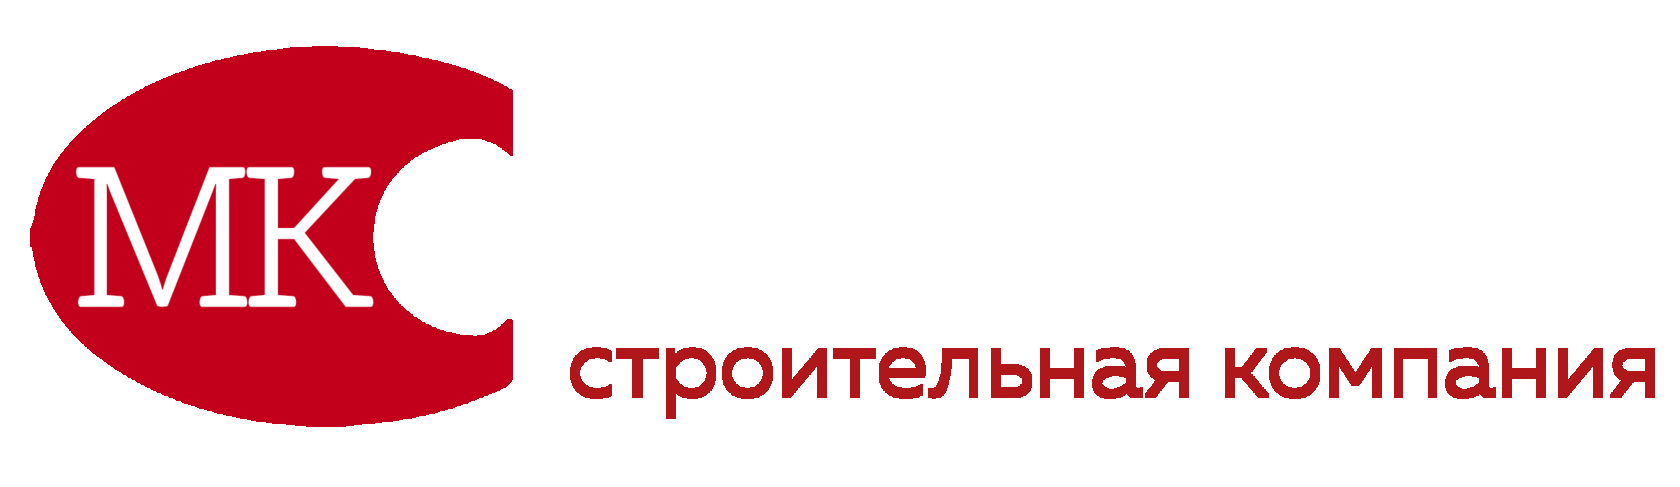 Логотип "МКСтрой", АО